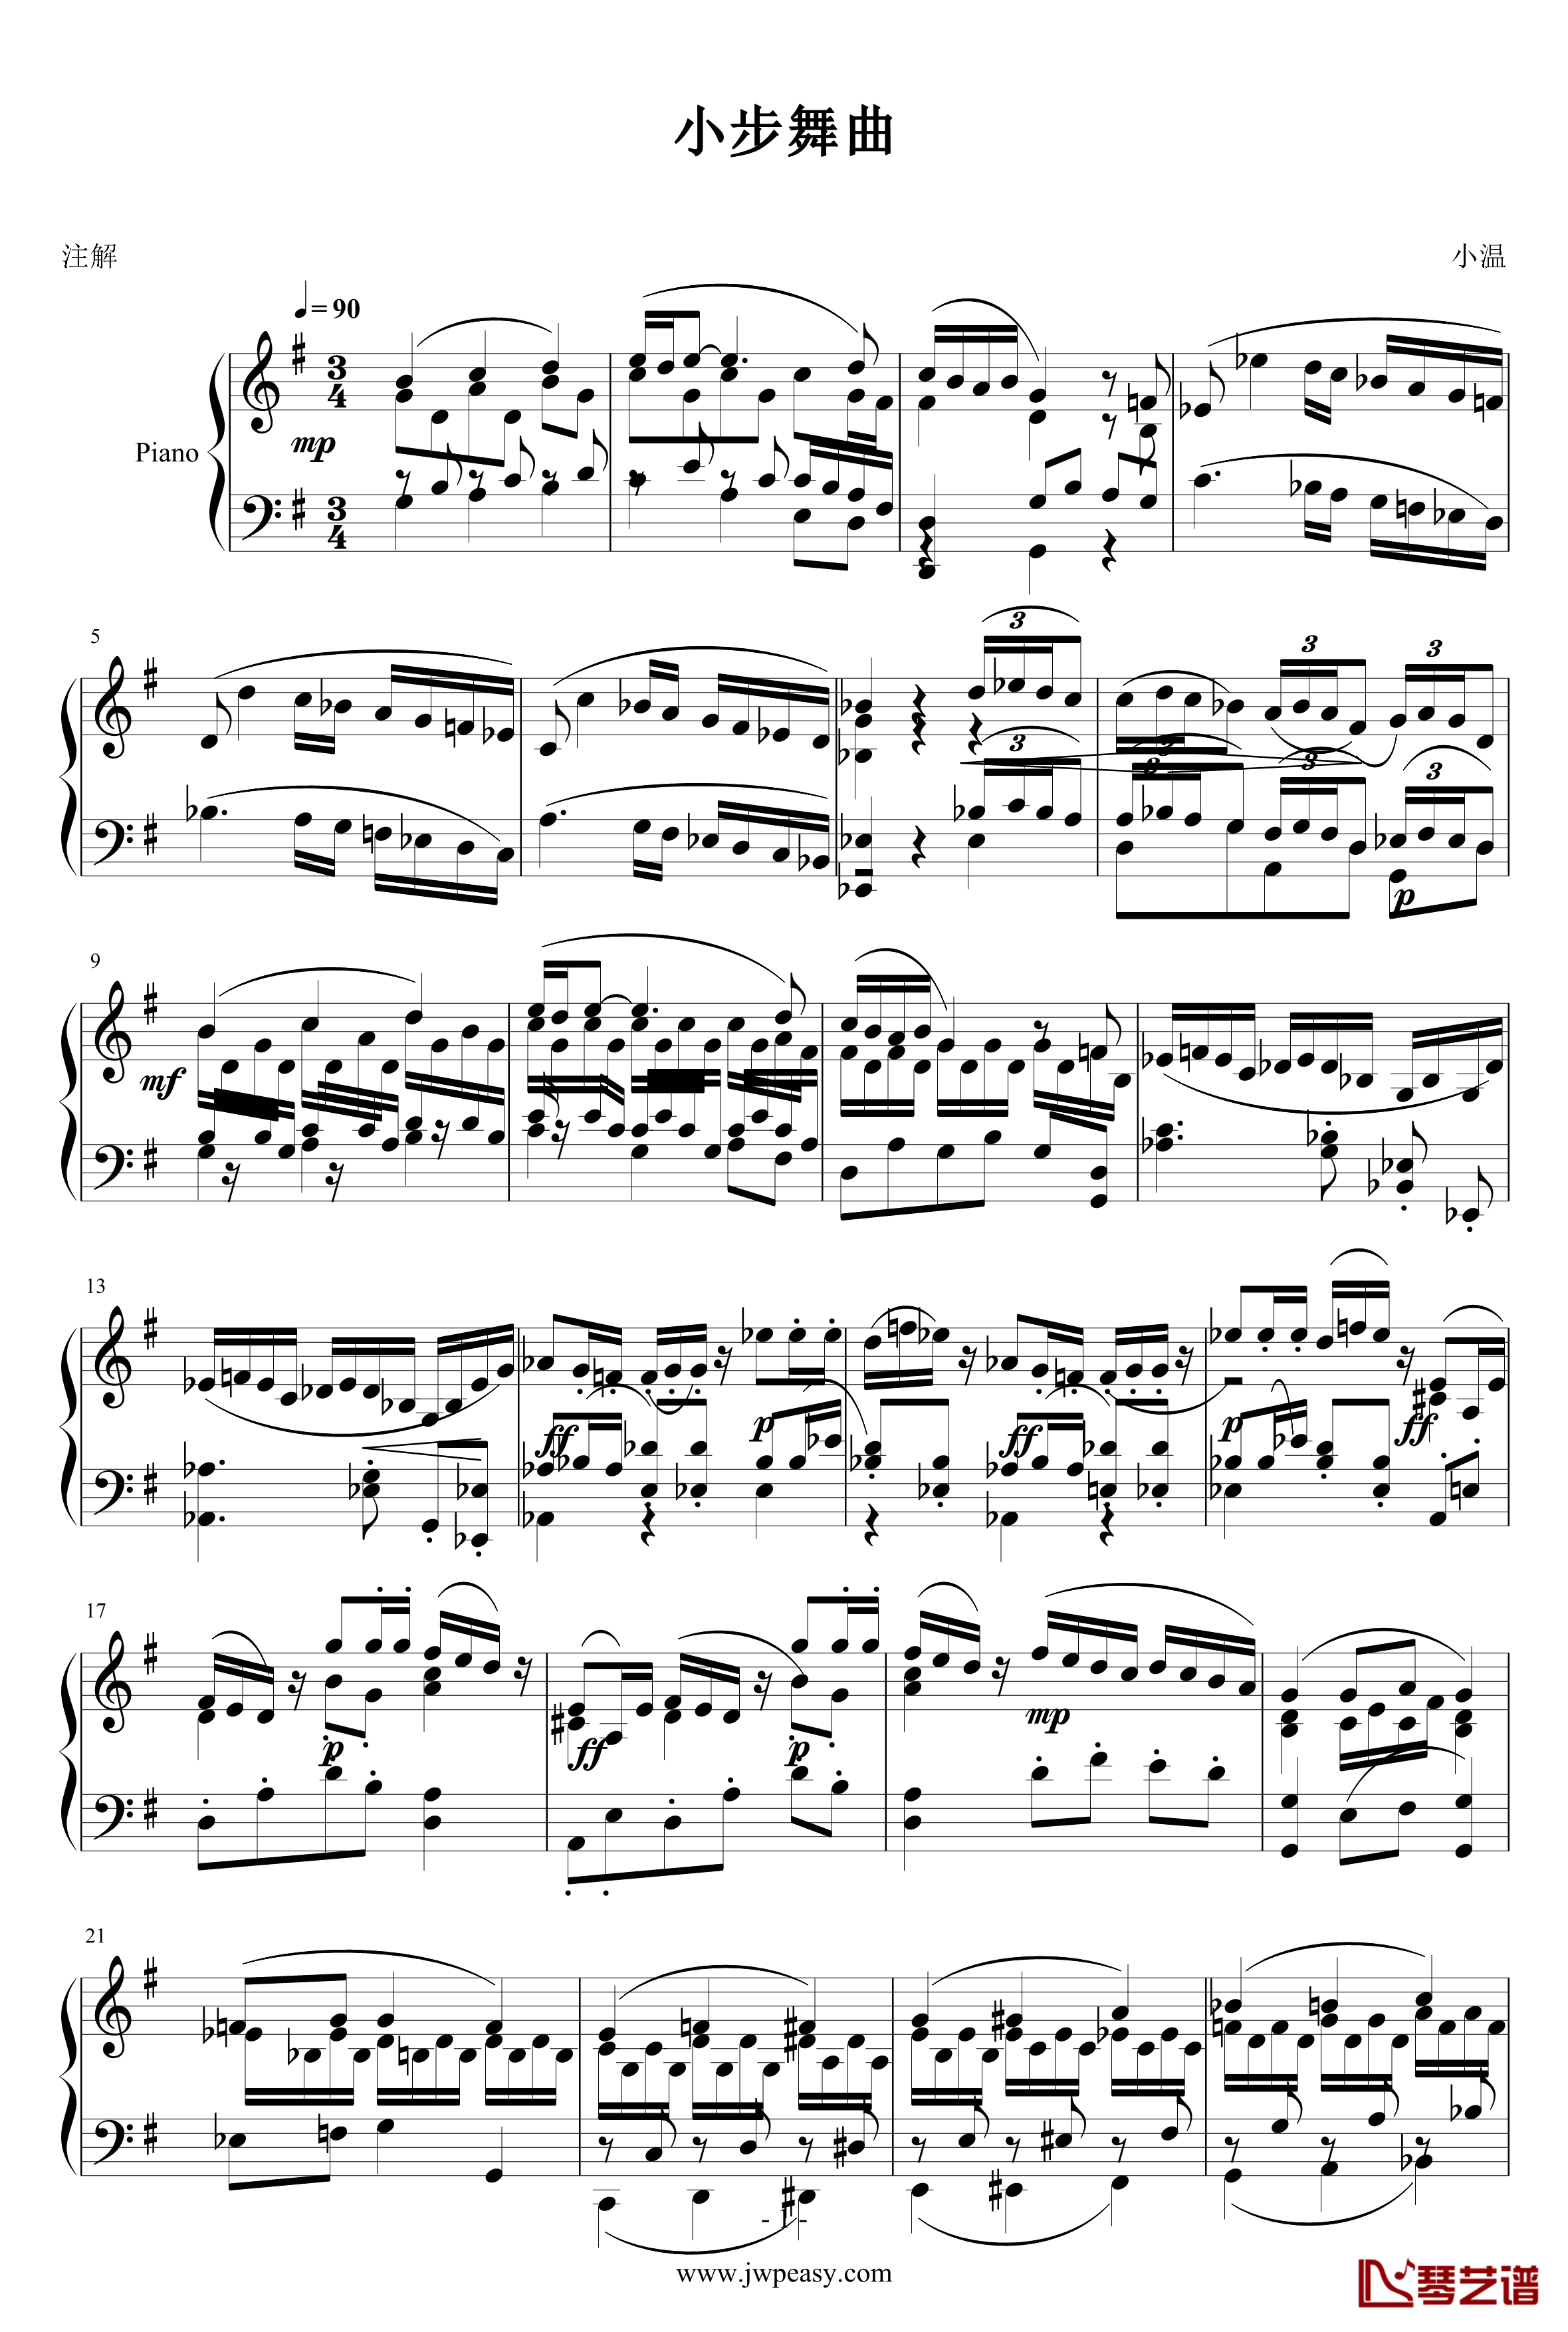 小步舞曲钢琴谱-ove版-一个球1